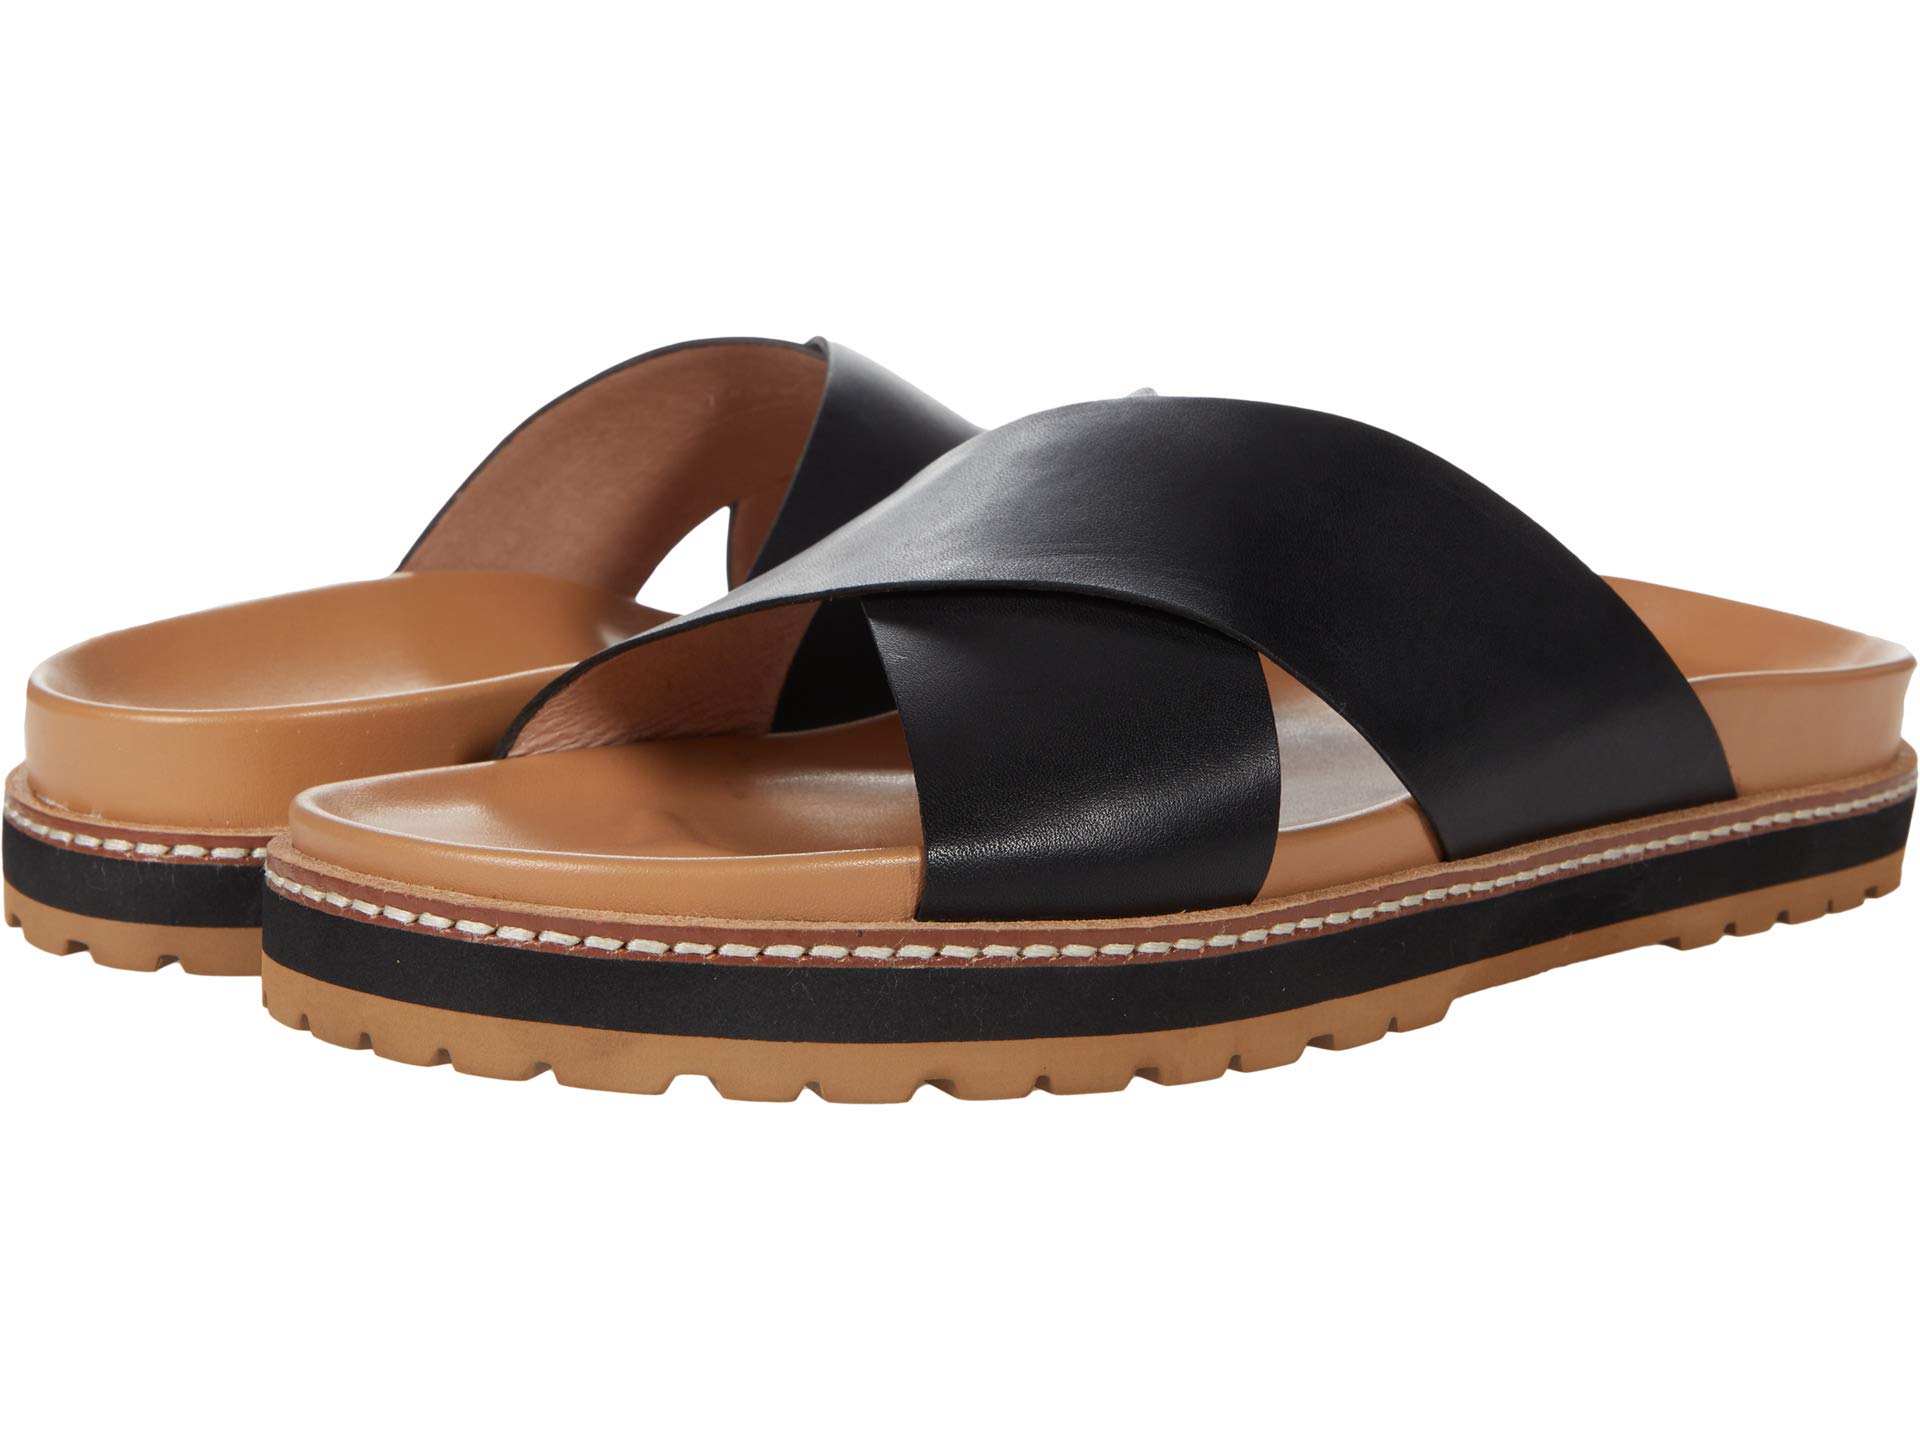 Сандалии Madewell, The Dayna Lugsole Slide Sandal in Leather